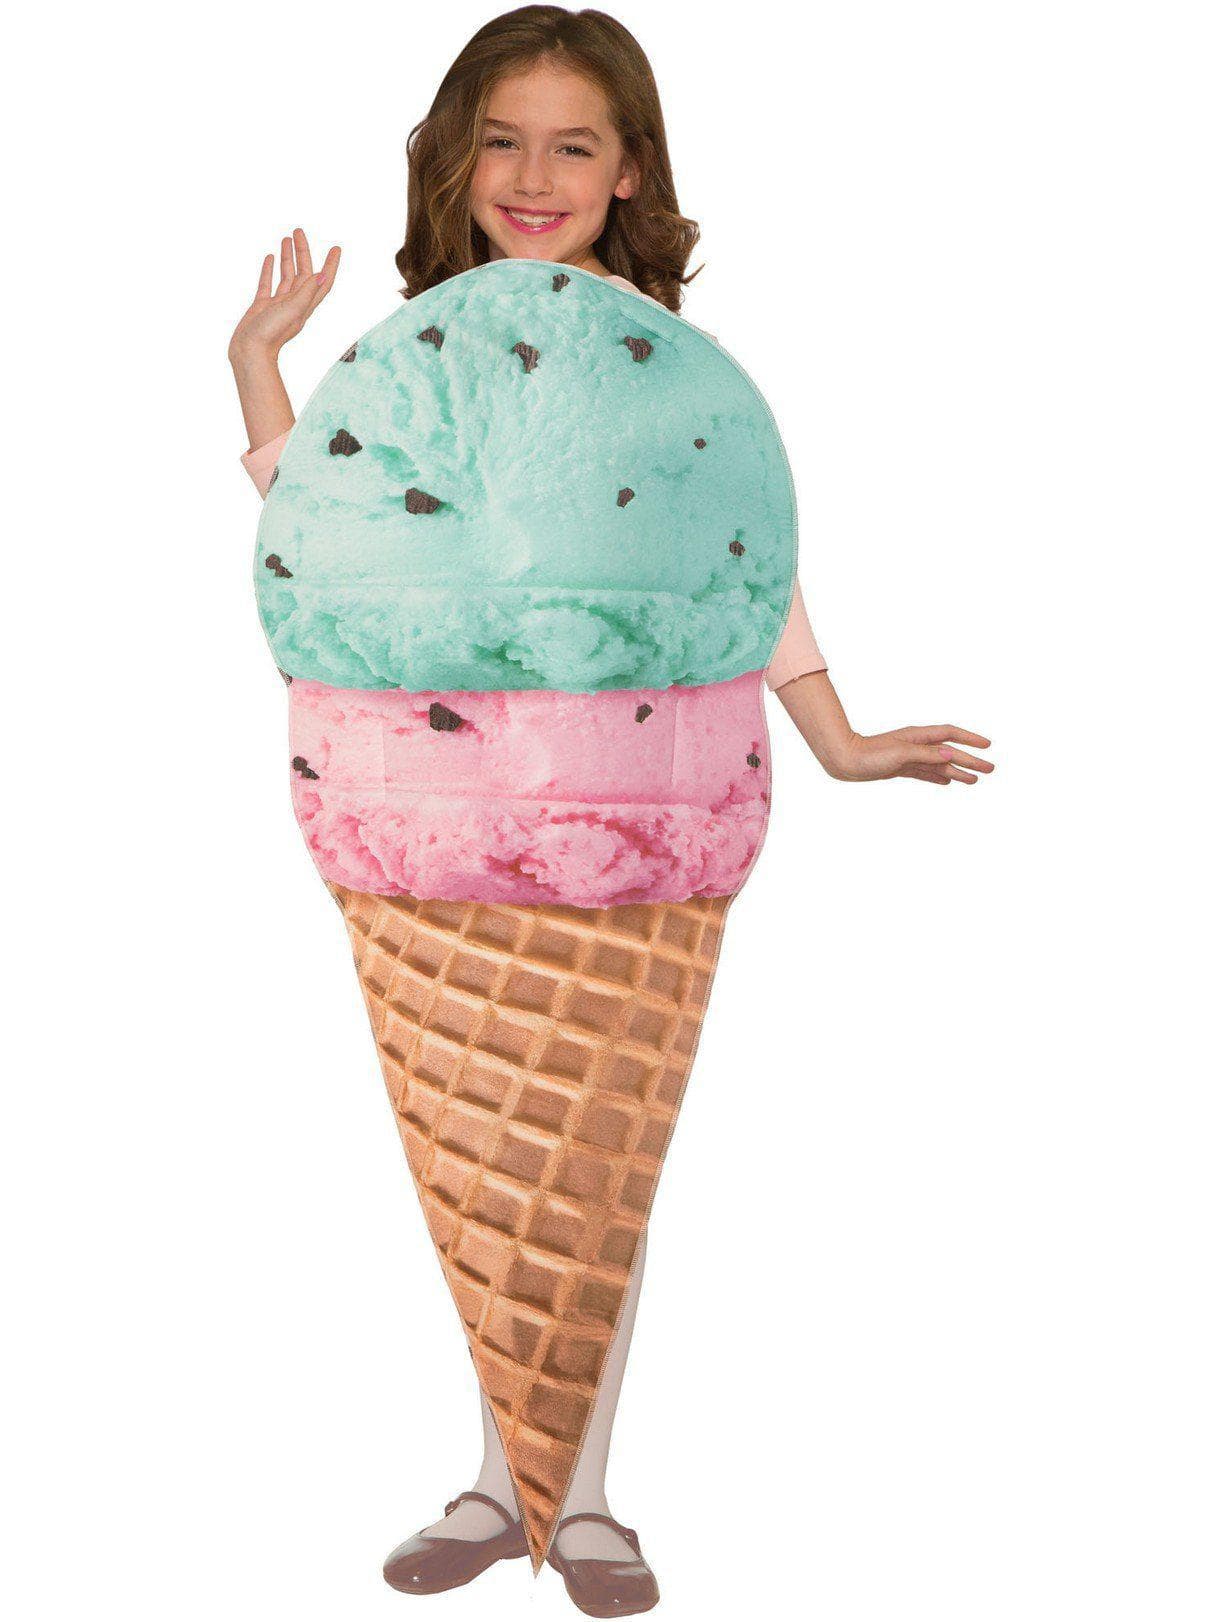 Kid's Ice Cream Cone Costume - costumes.com